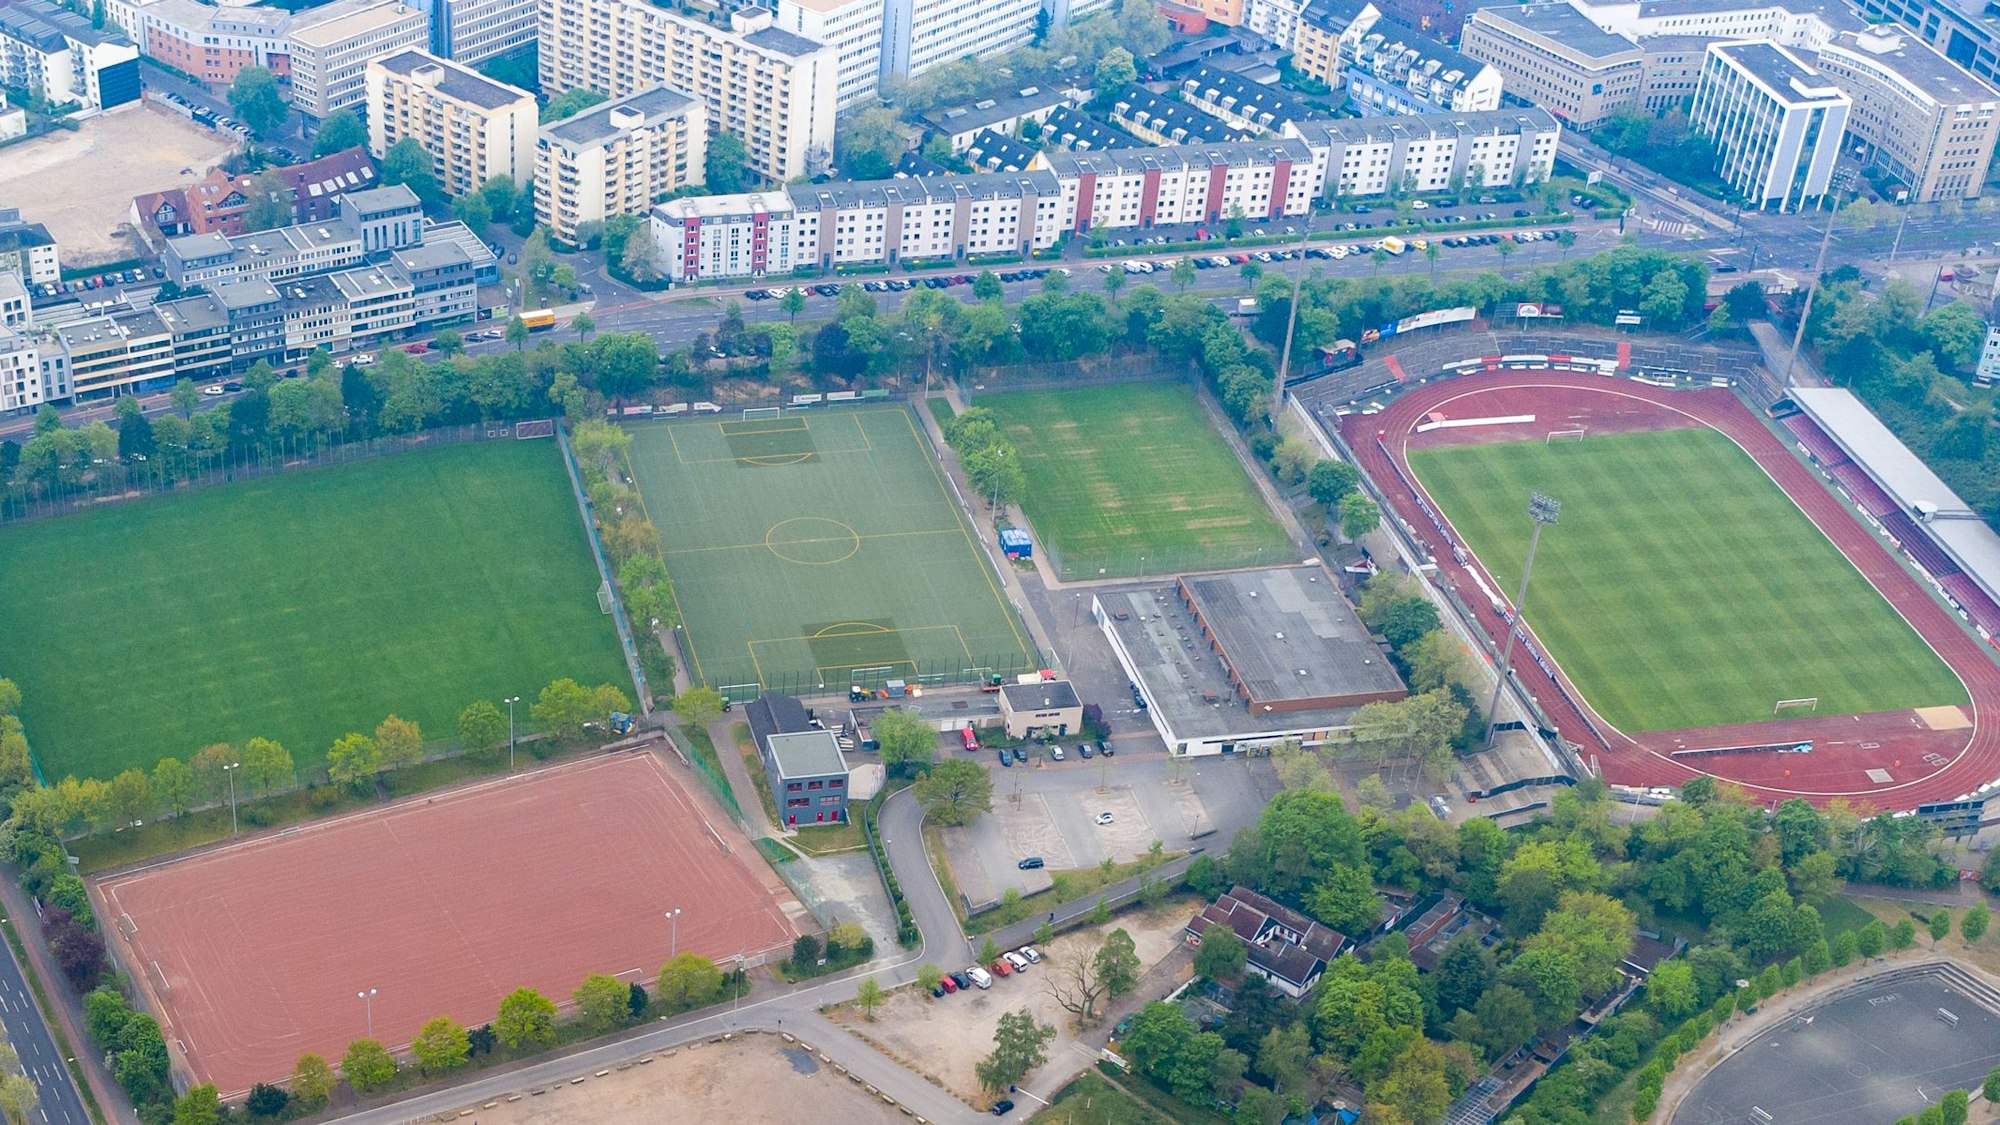 Luftaufnahme vom Jean-Löring-Sportpark mit den einzelnen Spielfeldern.